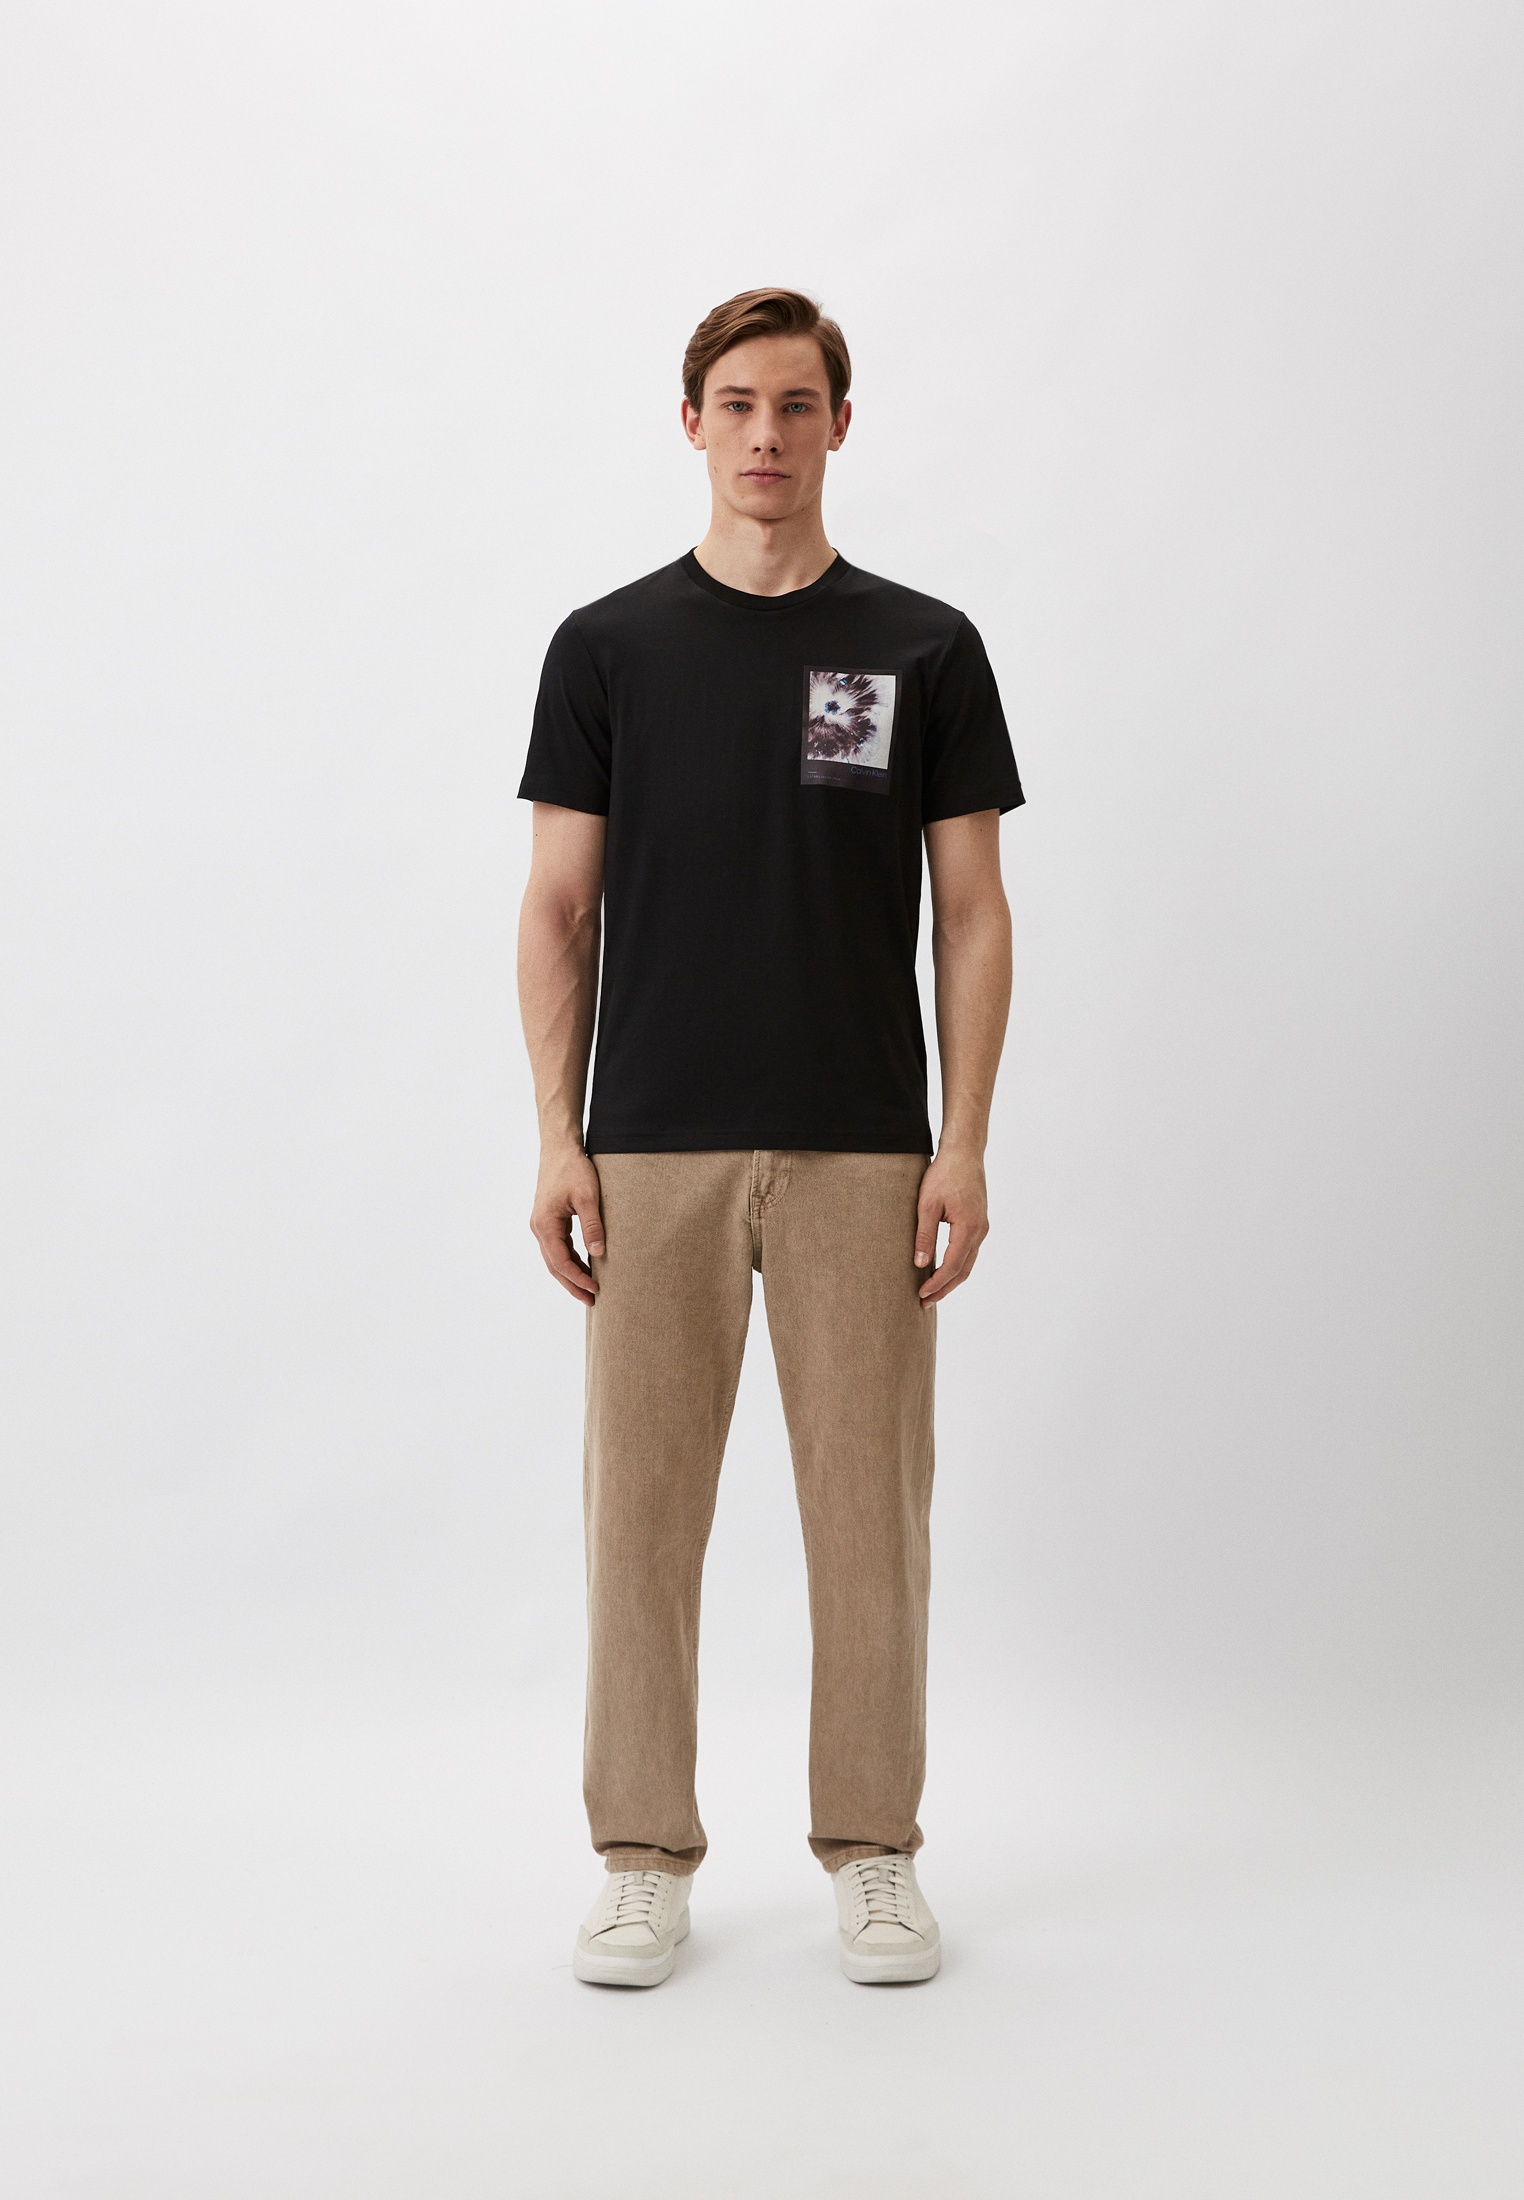 Мужская футболка Calvin Klein (Кельвин Кляйн) K10K112492: изображение 2